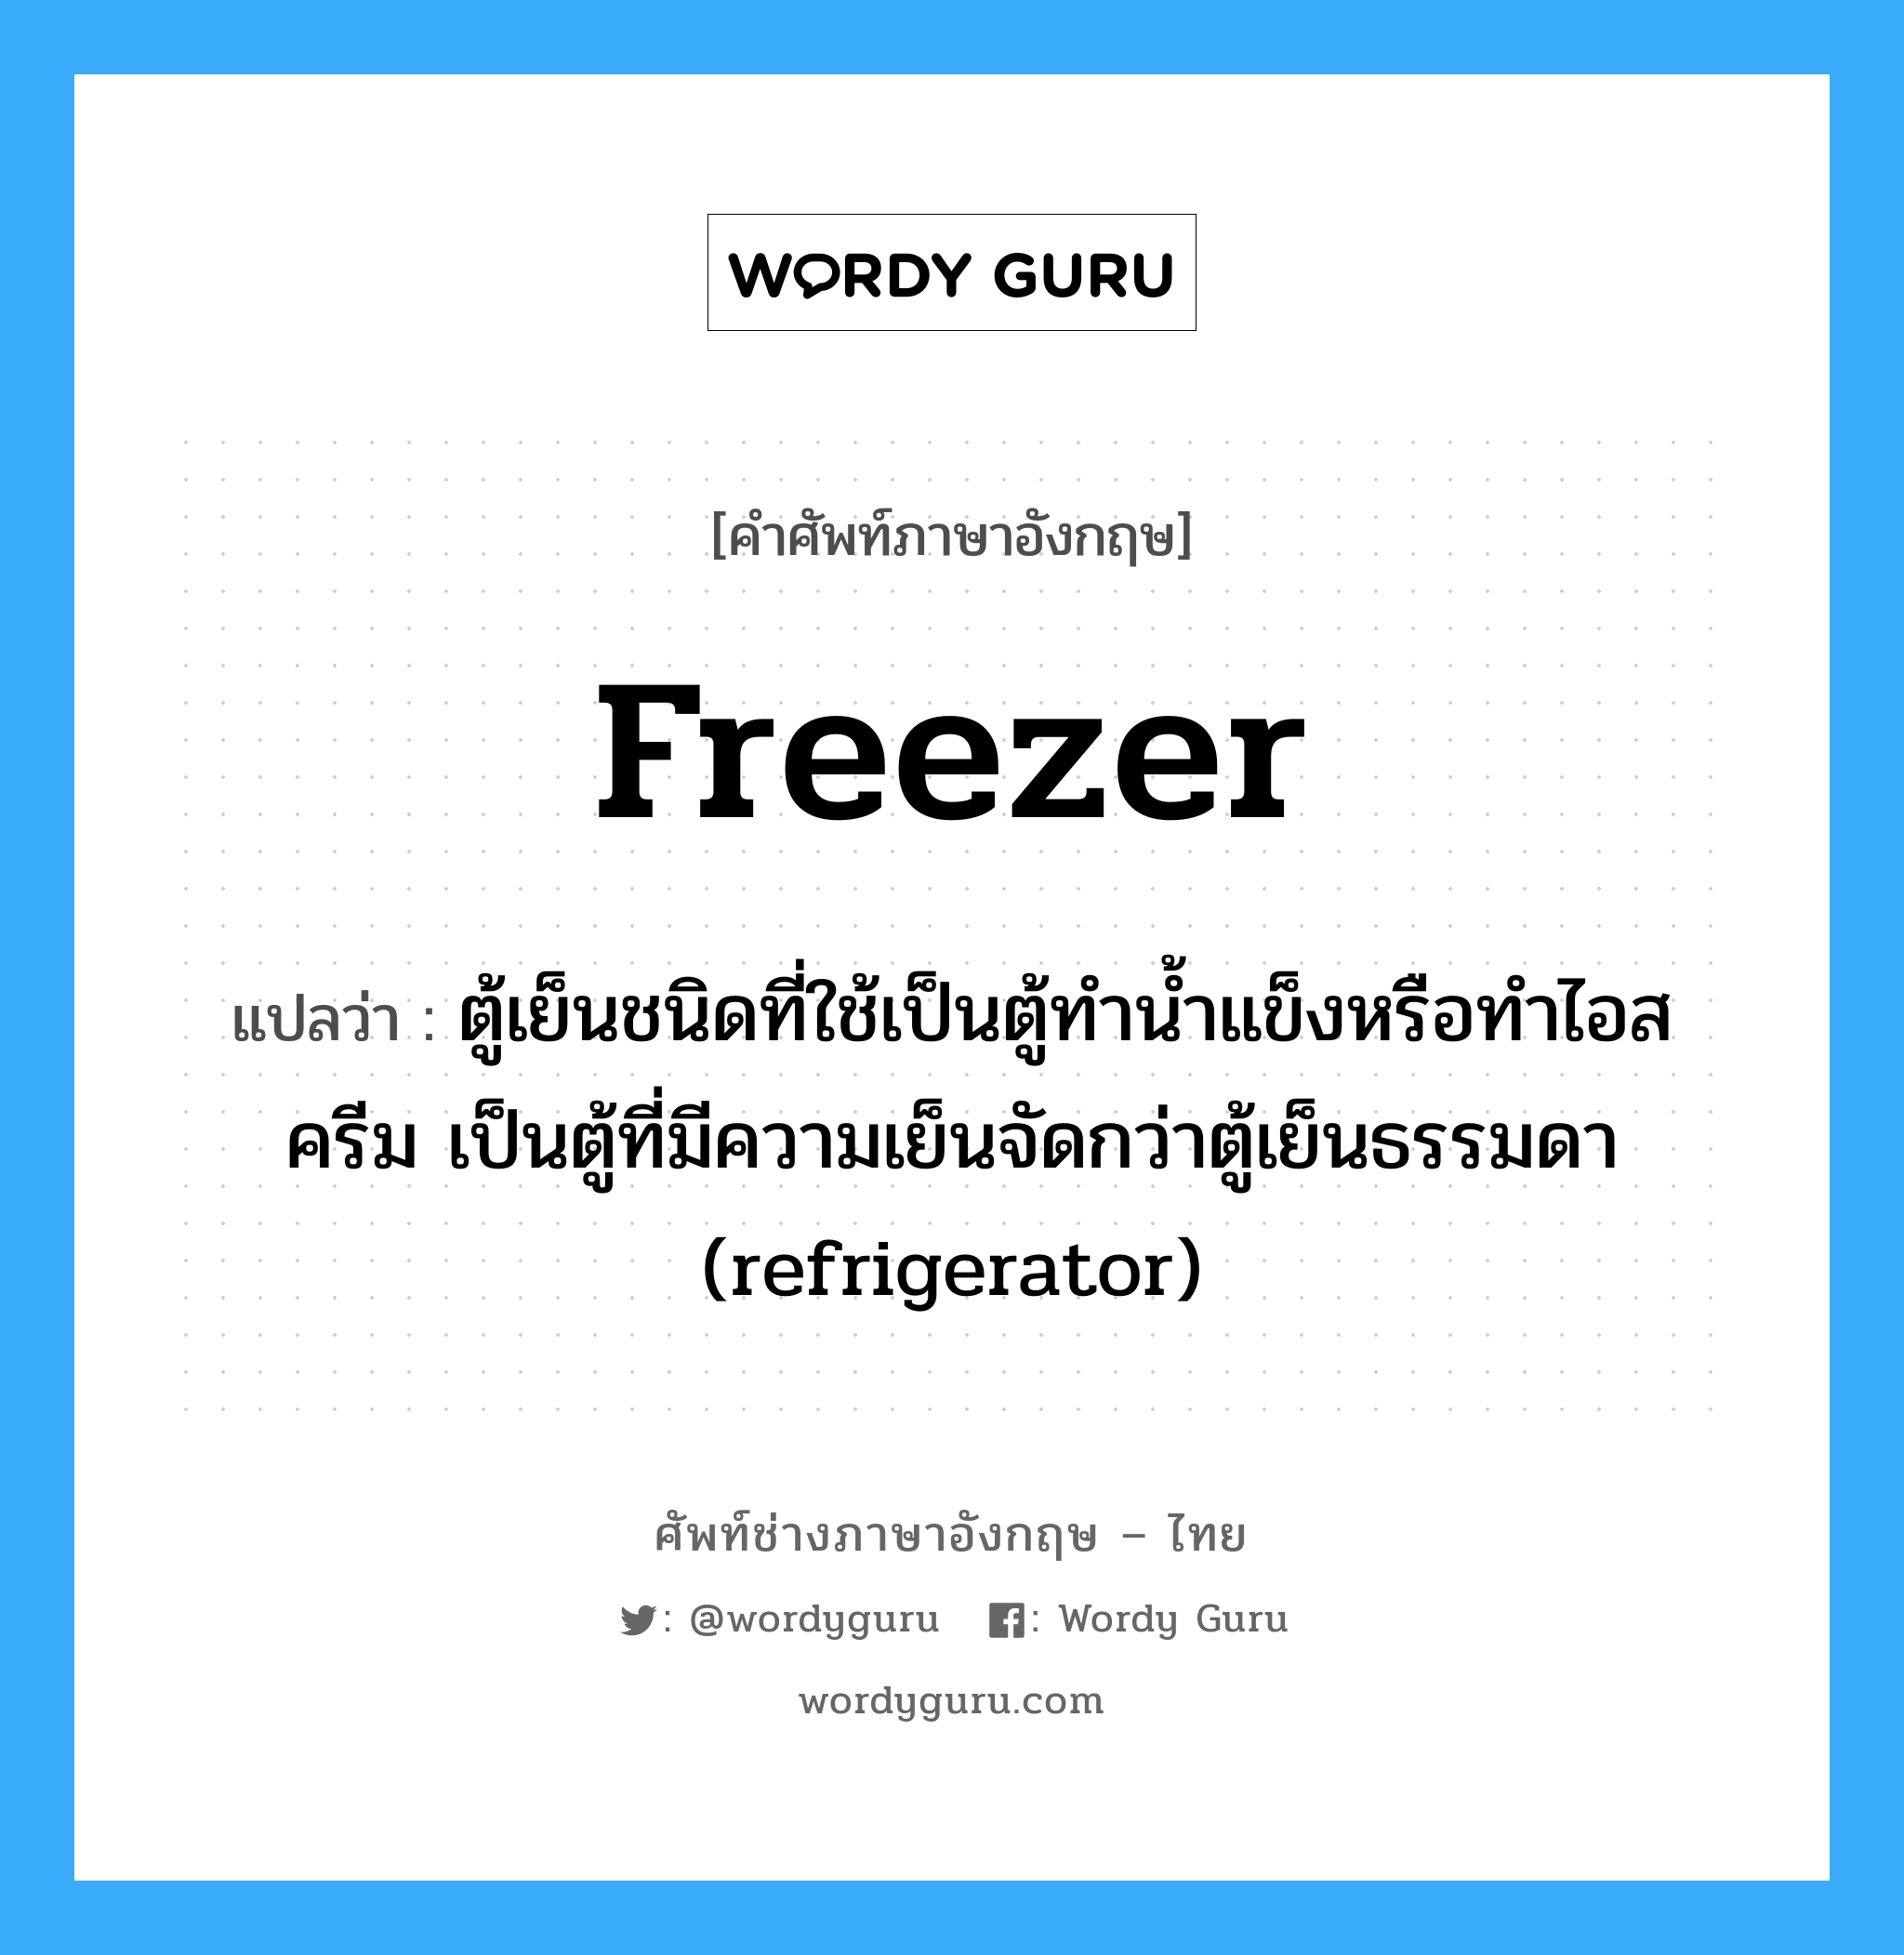 freezer แปลว่า?, คำศัพท์ช่างภาษาอังกฤษ - ไทย freezer คำศัพท์ภาษาอังกฤษ freezer แปลว่า ตู้เย็นชนิดที่ใช้เป็นตู้ทำน้ำแข็งหรือทำไอสครีม เป็นตู้ที่มีความเย็นจัดกว่าตู้เย็นธรรมดา (refrigerator)